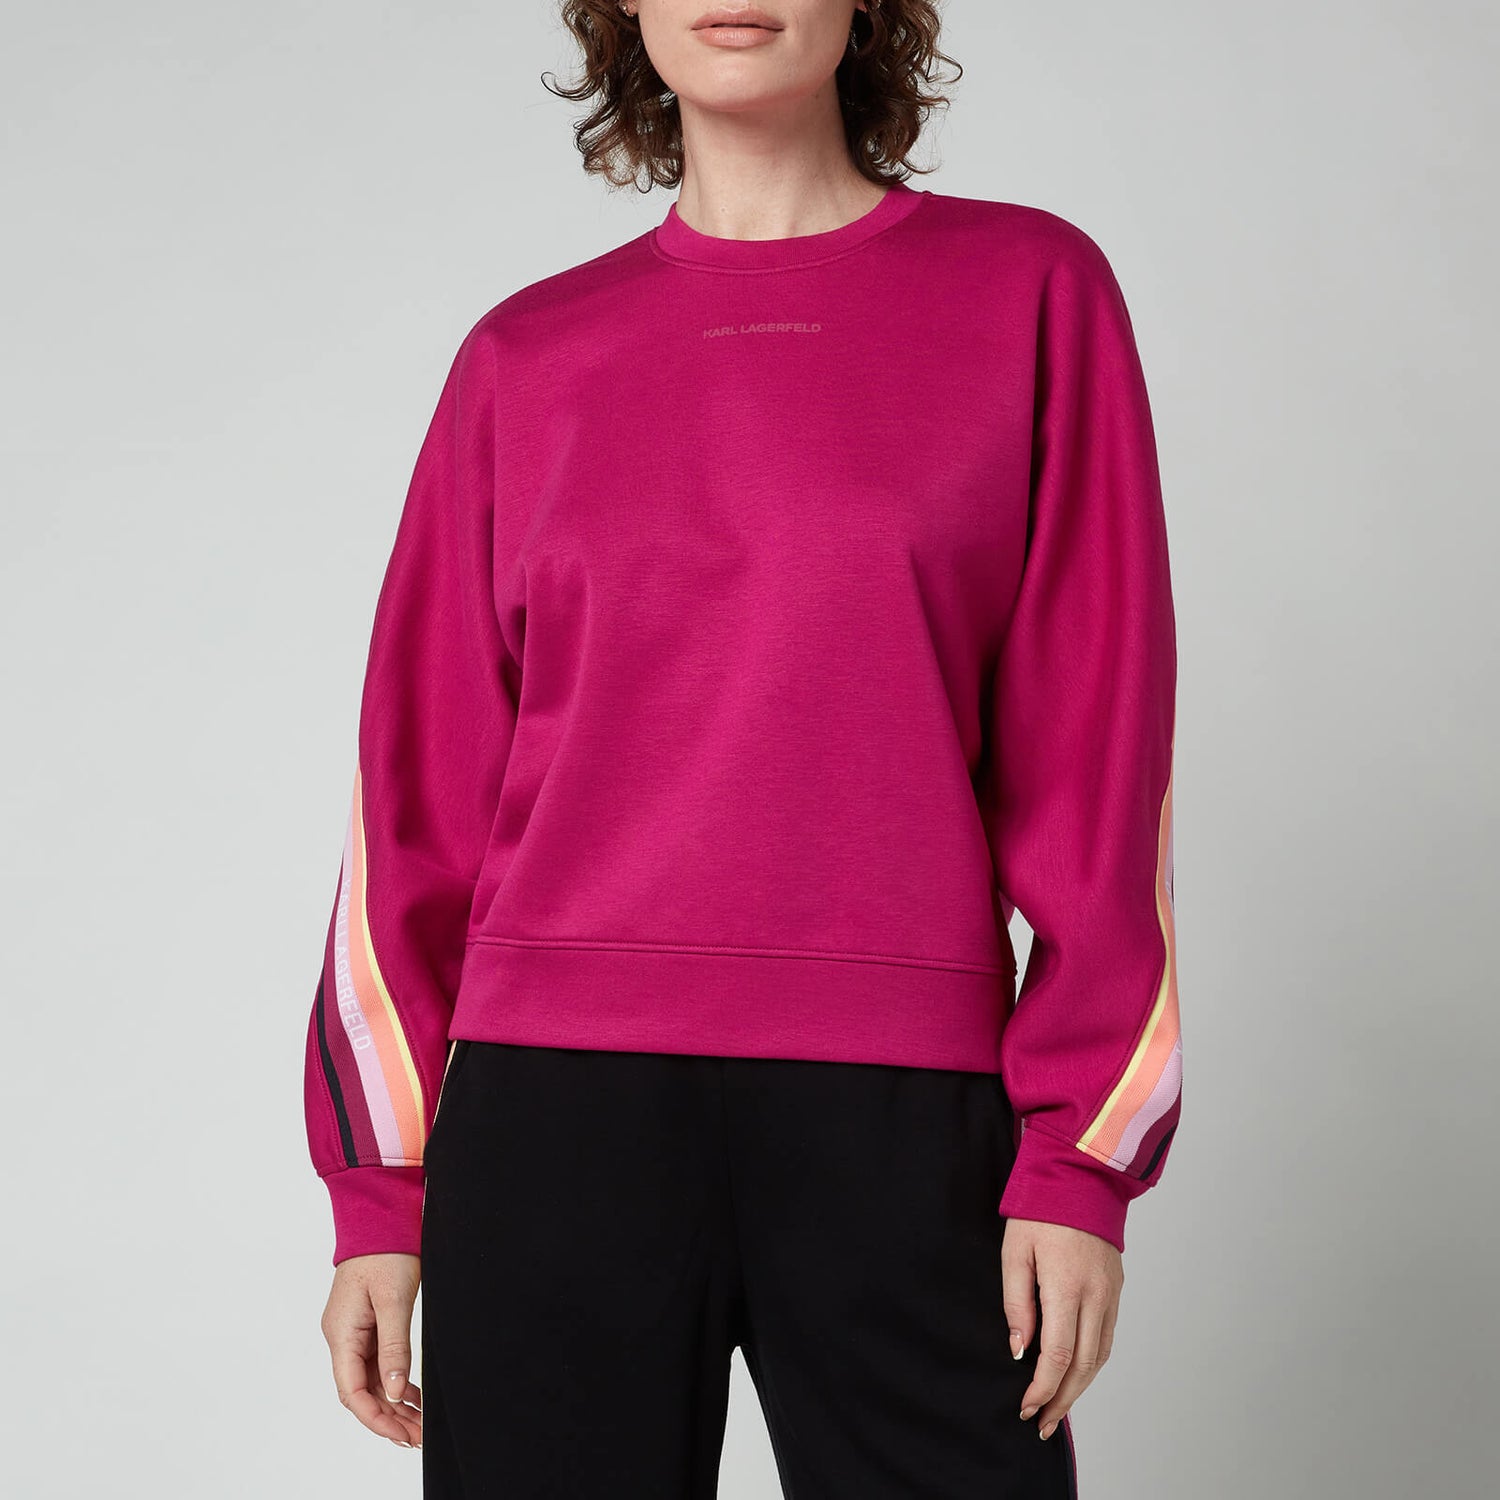 KARL LAGERFELD Women's Double Jersey Tape Sweatshirt - Fuschia - XS